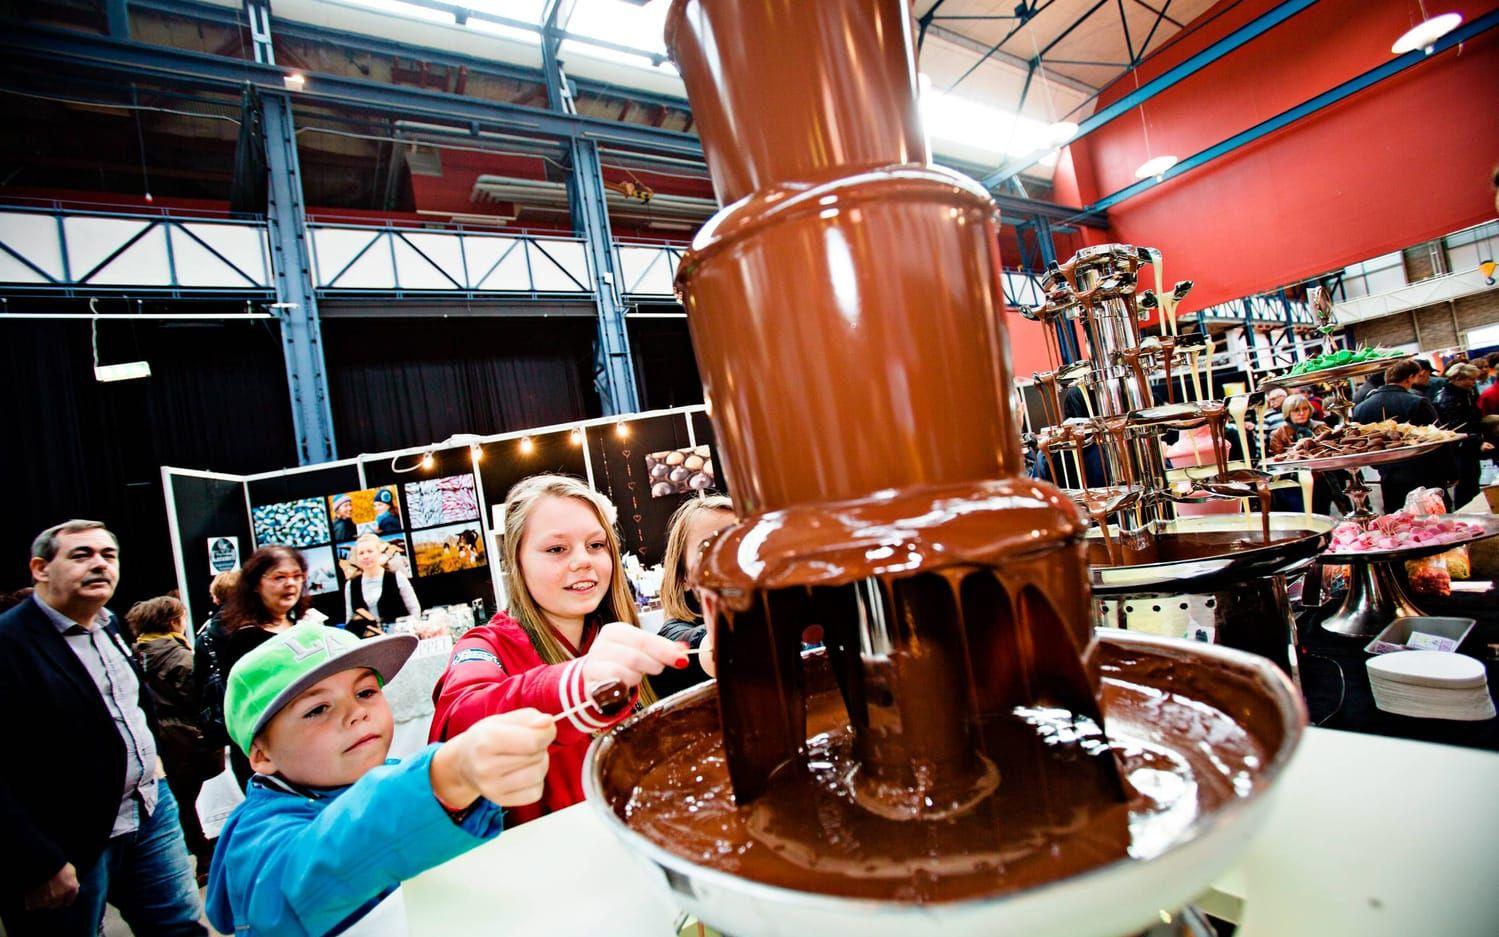 Ivar och Sanna Lingsten provsmakar choklad från en stor chokladfontän. Var den god? Nej, men den chokladsort jag hade velat ha hade blivit för dyr, säger Sanna.